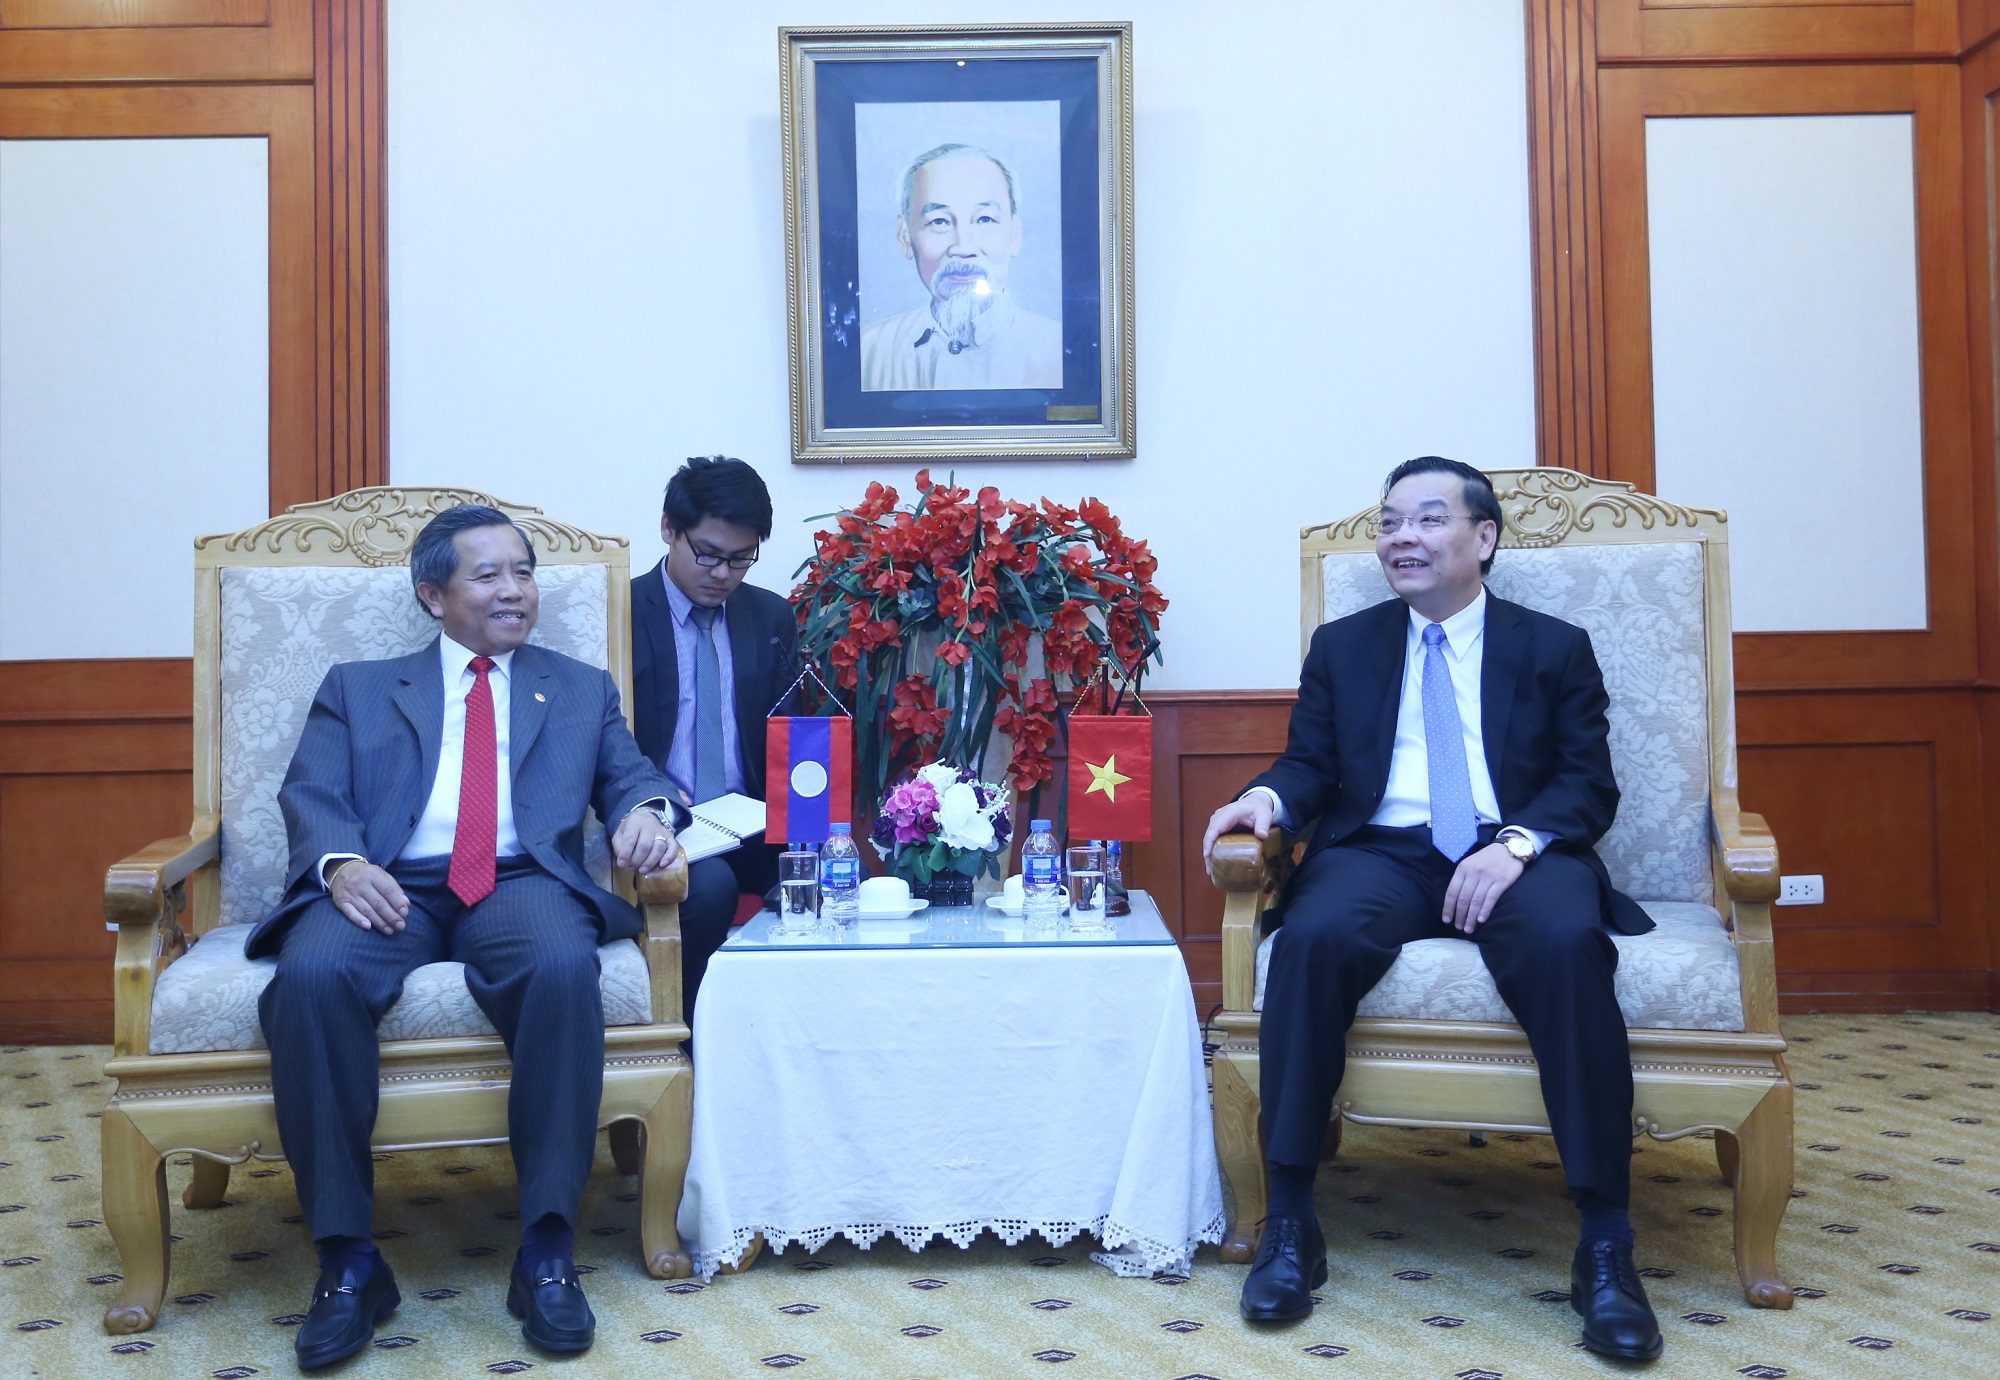 Bộ trưởng Bộ KH&CN Việt Nam Chu Ngọc Anh và Bộ trưởng Bộ KH&CN Lào Boviengkham Vongdara trao đổi về hợp tác trong lĩnh vực KH&CN giữa hai bên.